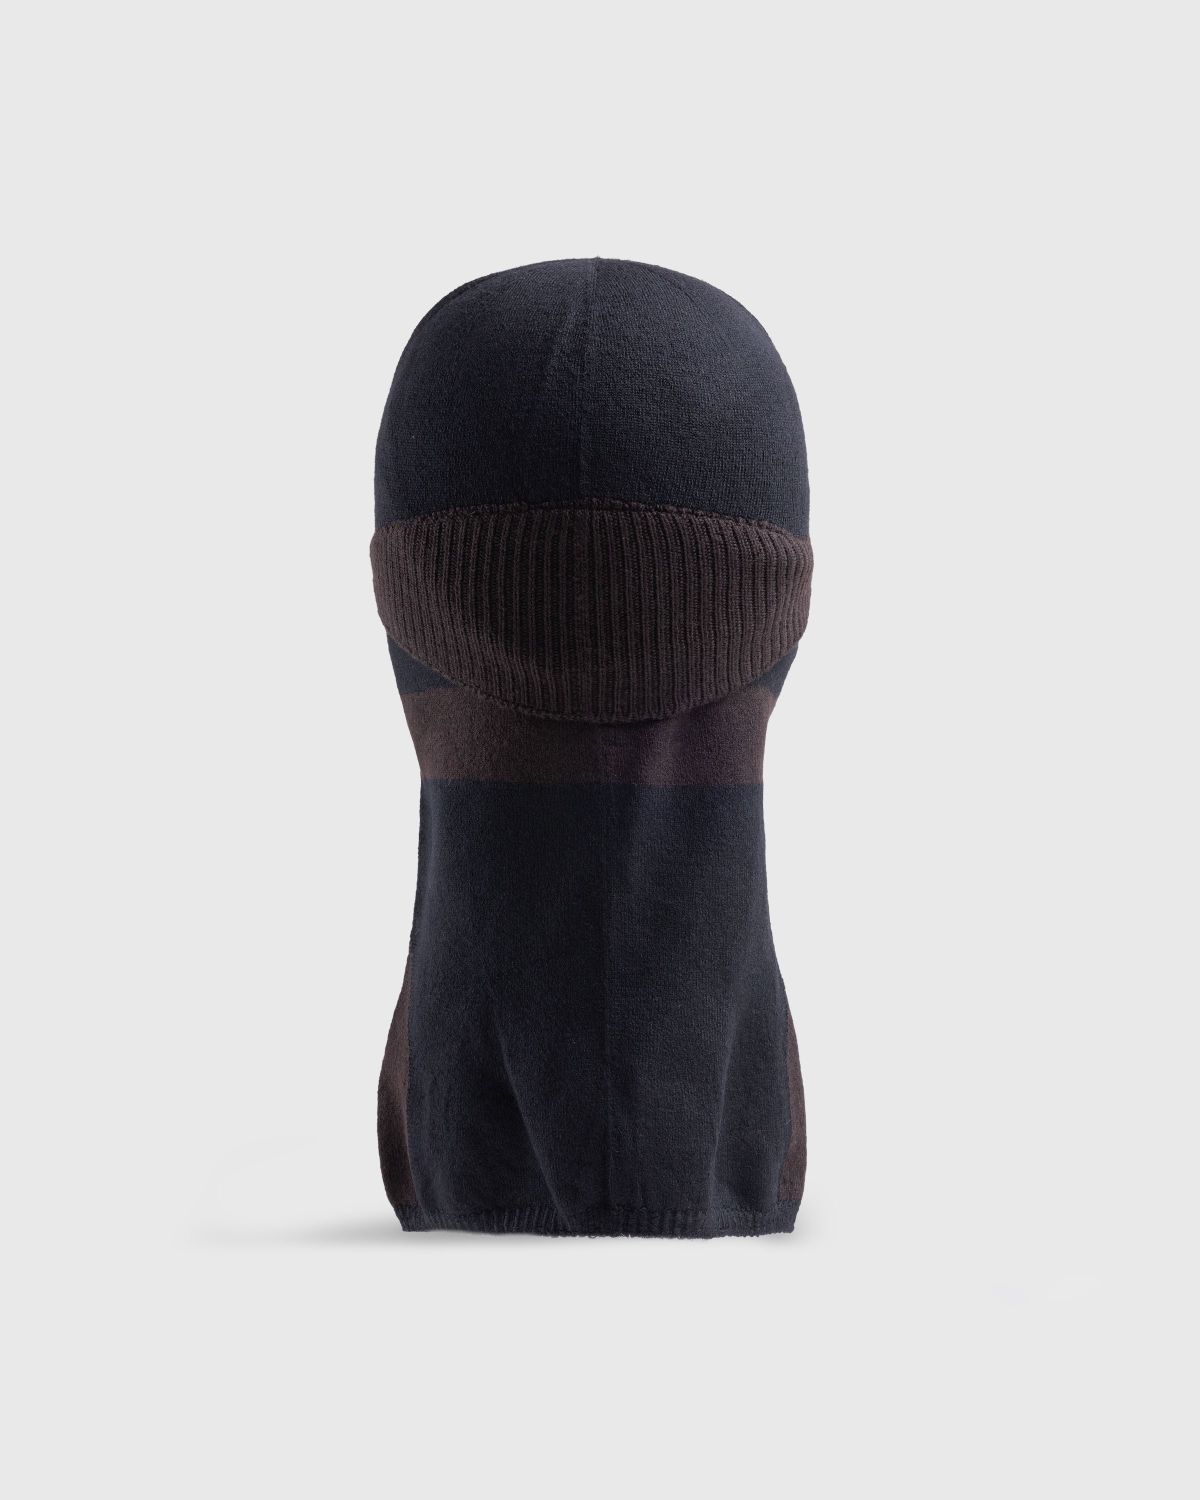 _J.L-A.L_ – Wool Balaclava Black - Hats - Black - Image 4